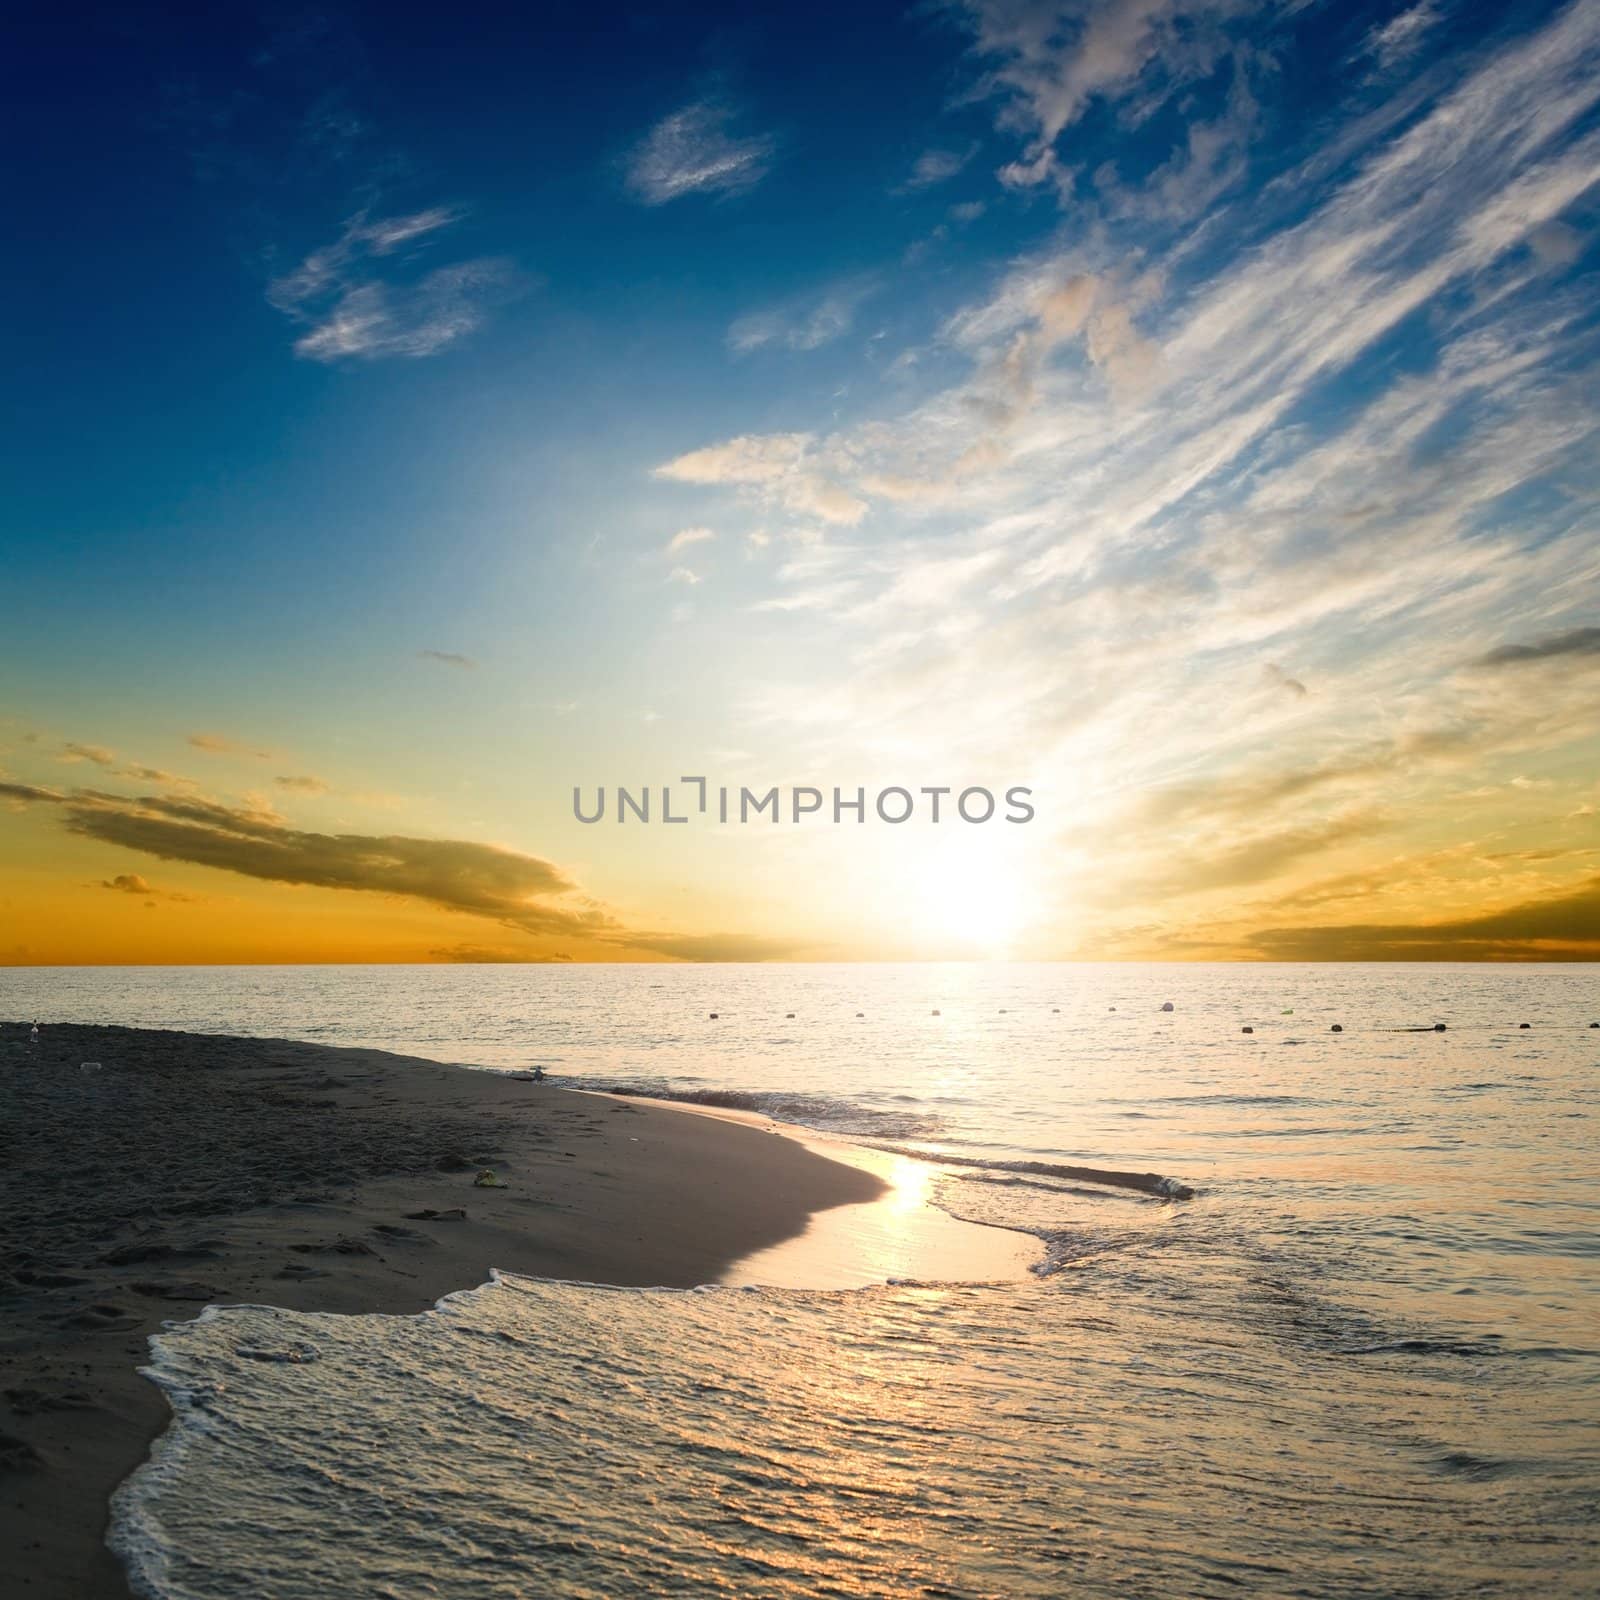 An image of beautiful sunrise over the sea